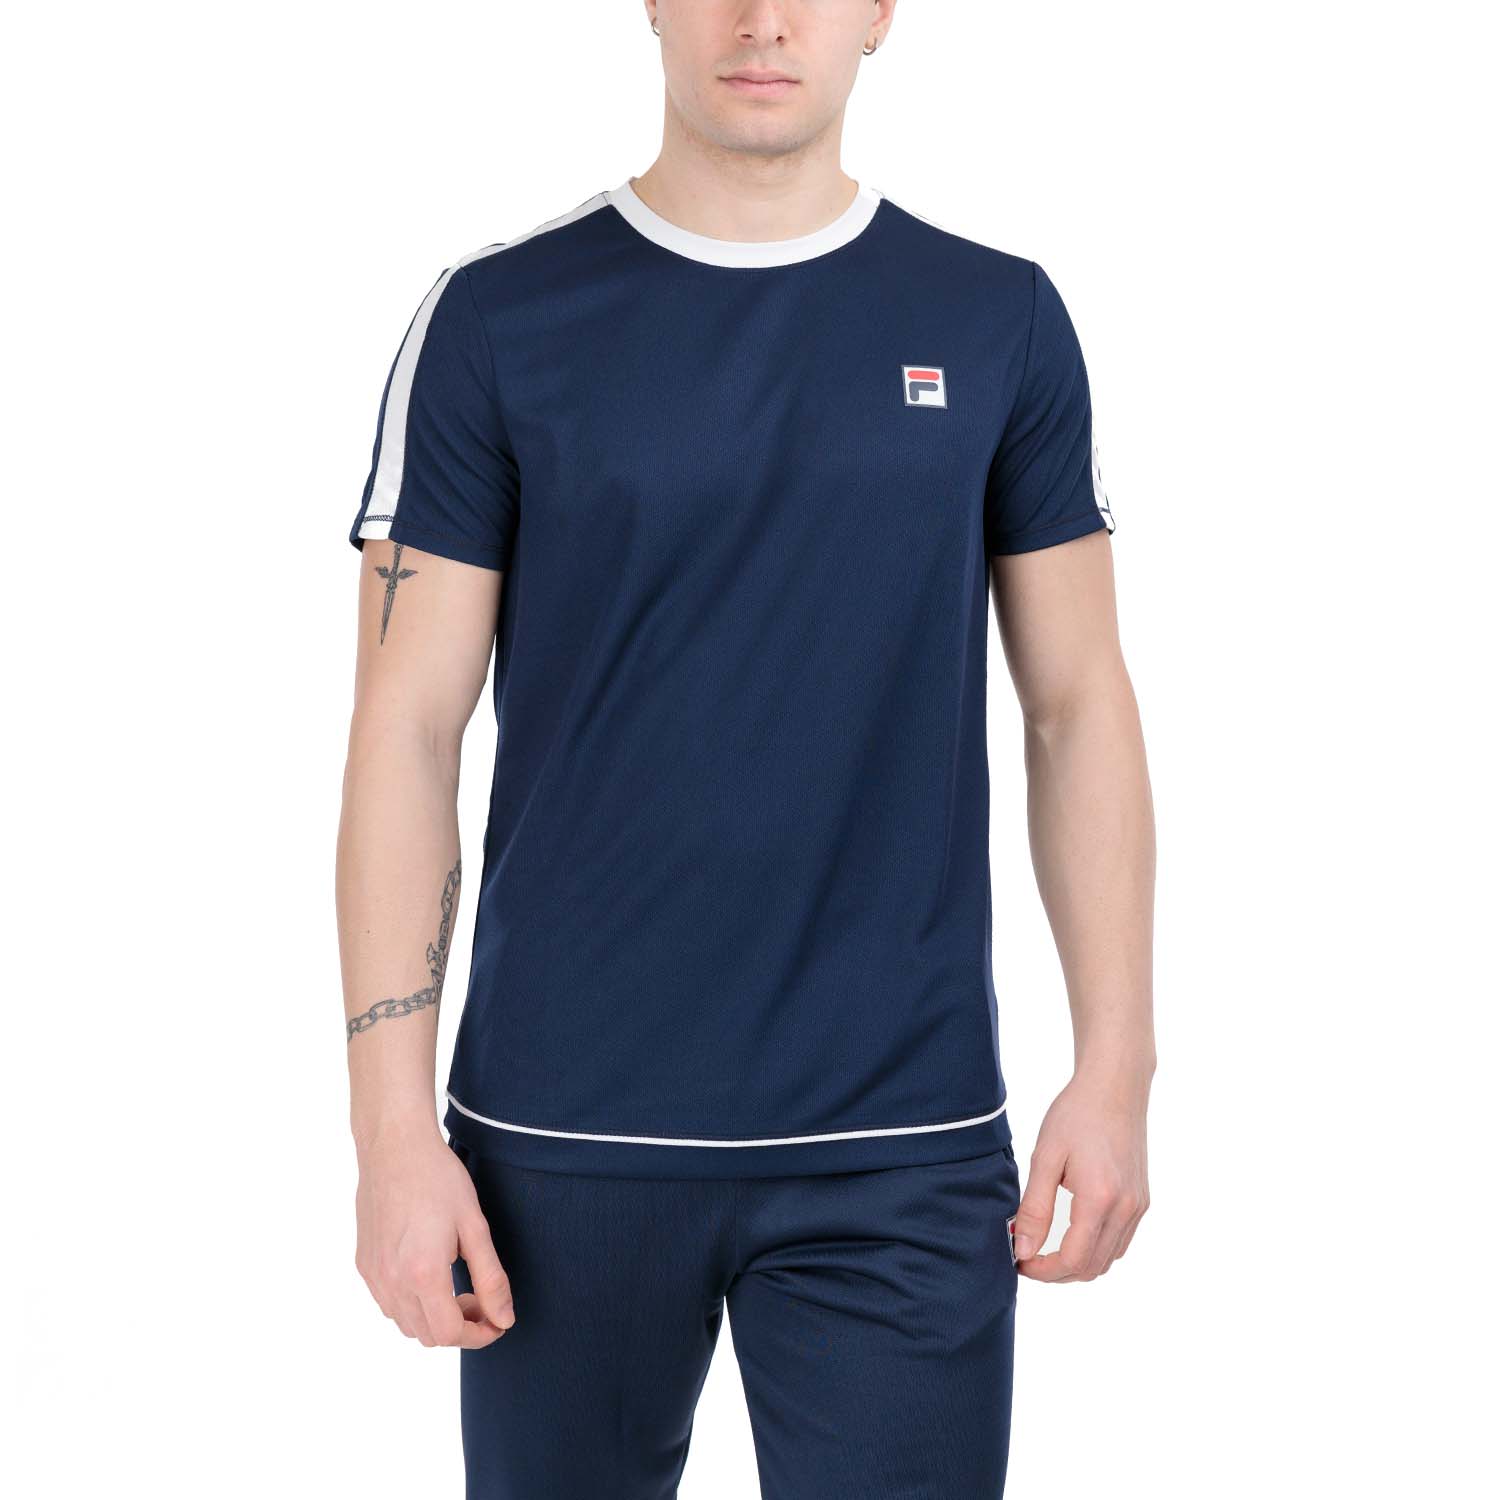 Fila Elias T-Shirt - Navy/White